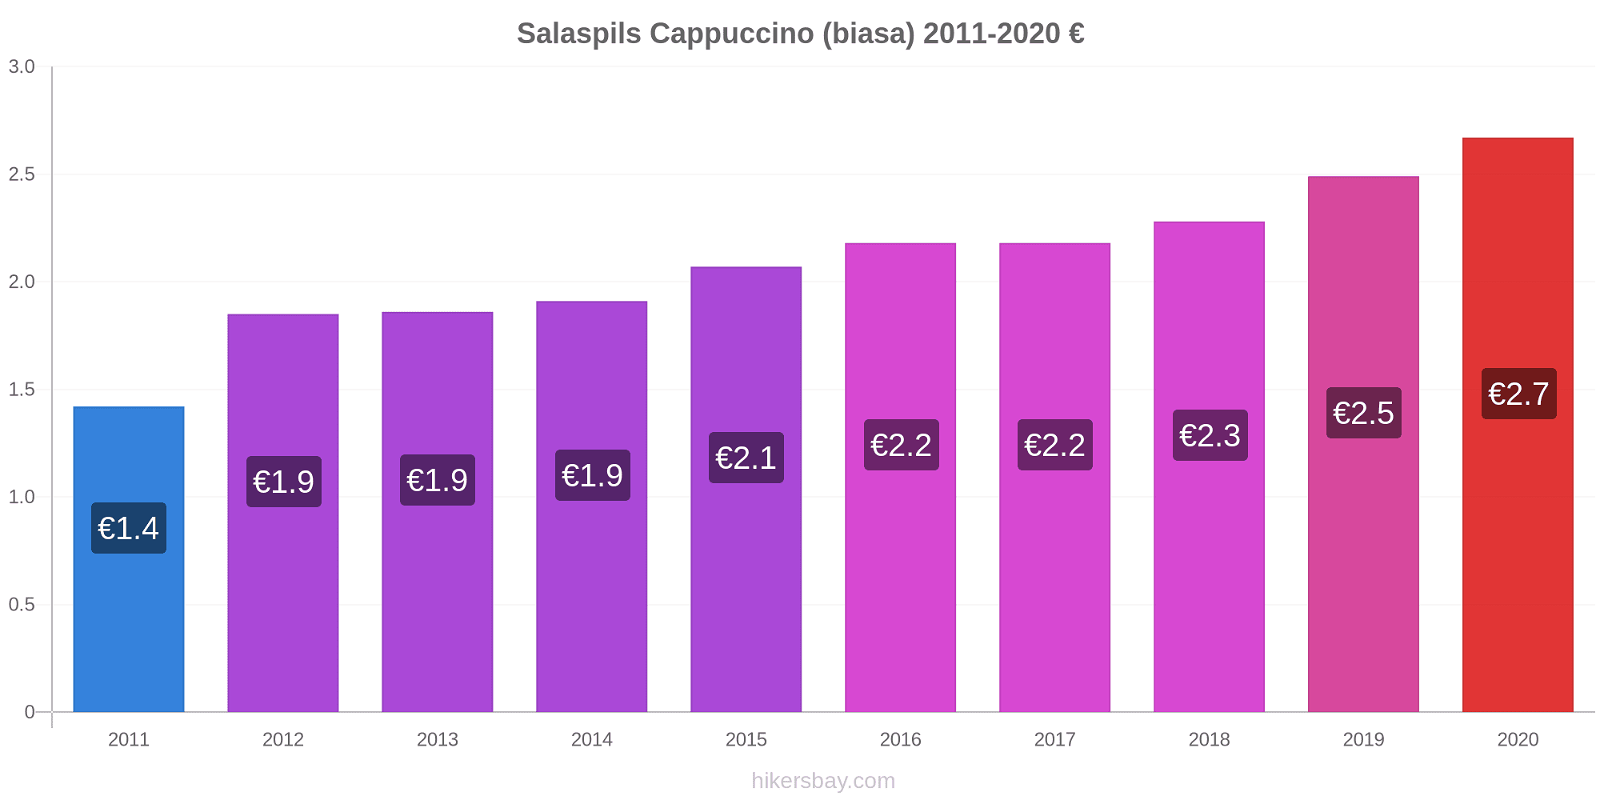 Salaspils perubahan harga Cappuccino (biasa) hikersbay.com